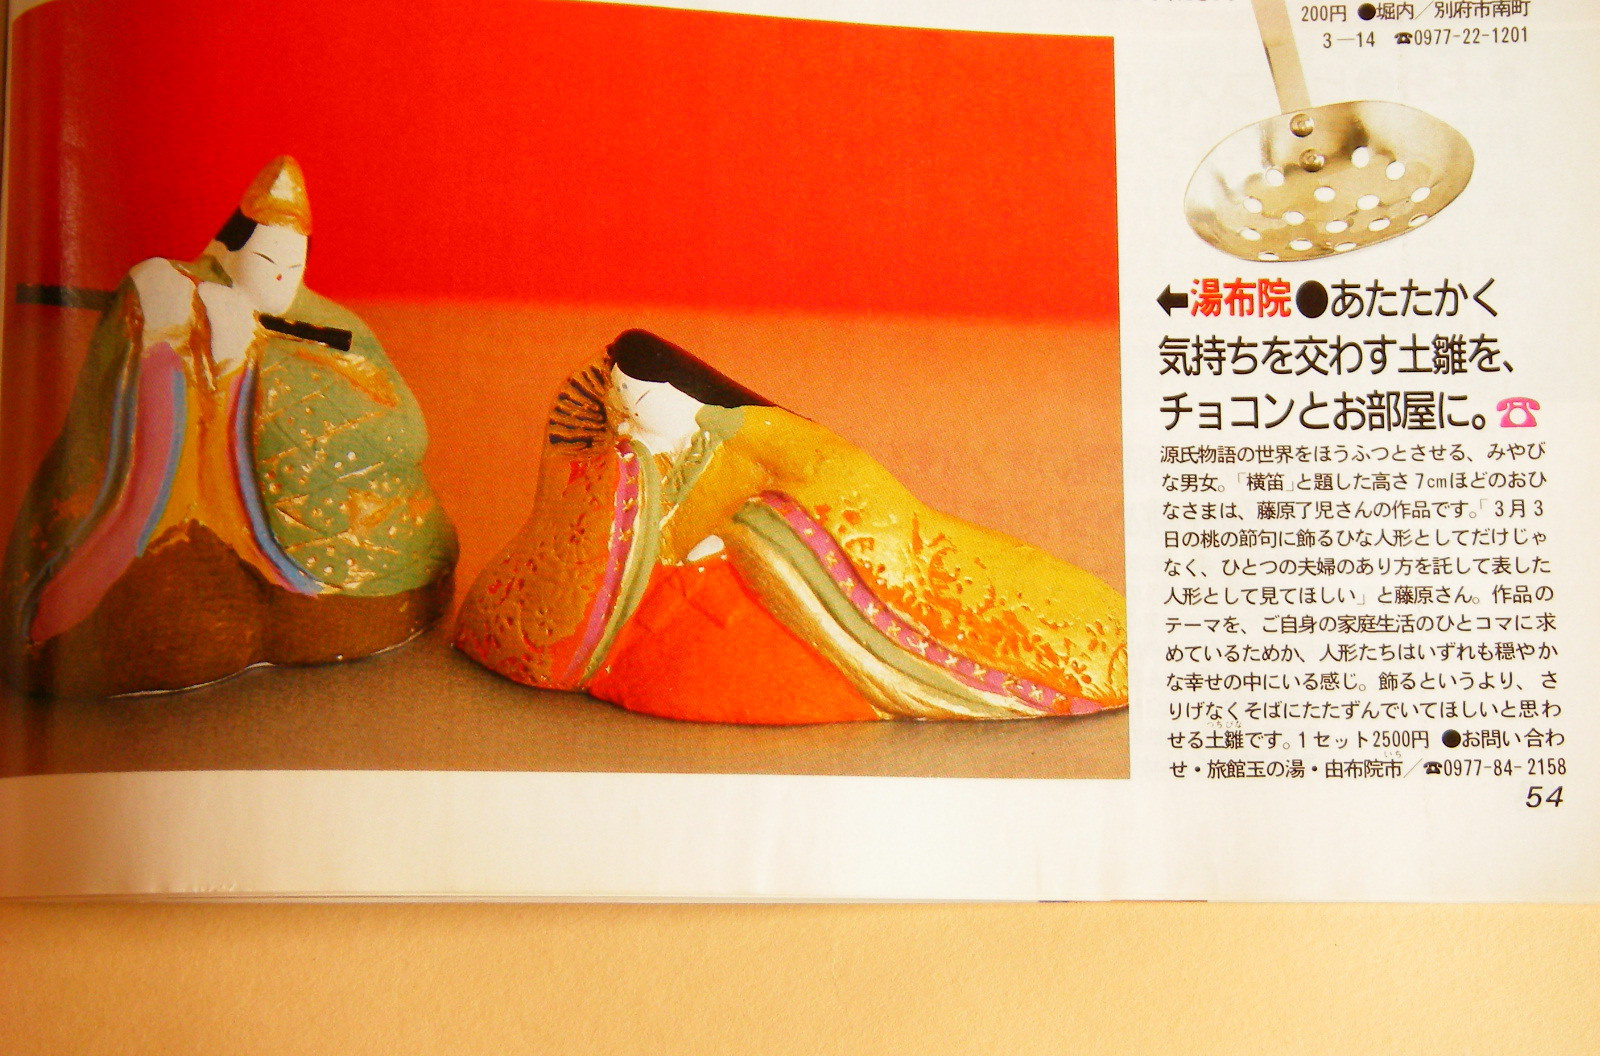 雑誌オレンジページの紹介された、みかわ工房の手のひらサイズの雛人形の源氏雛「横笛」です。